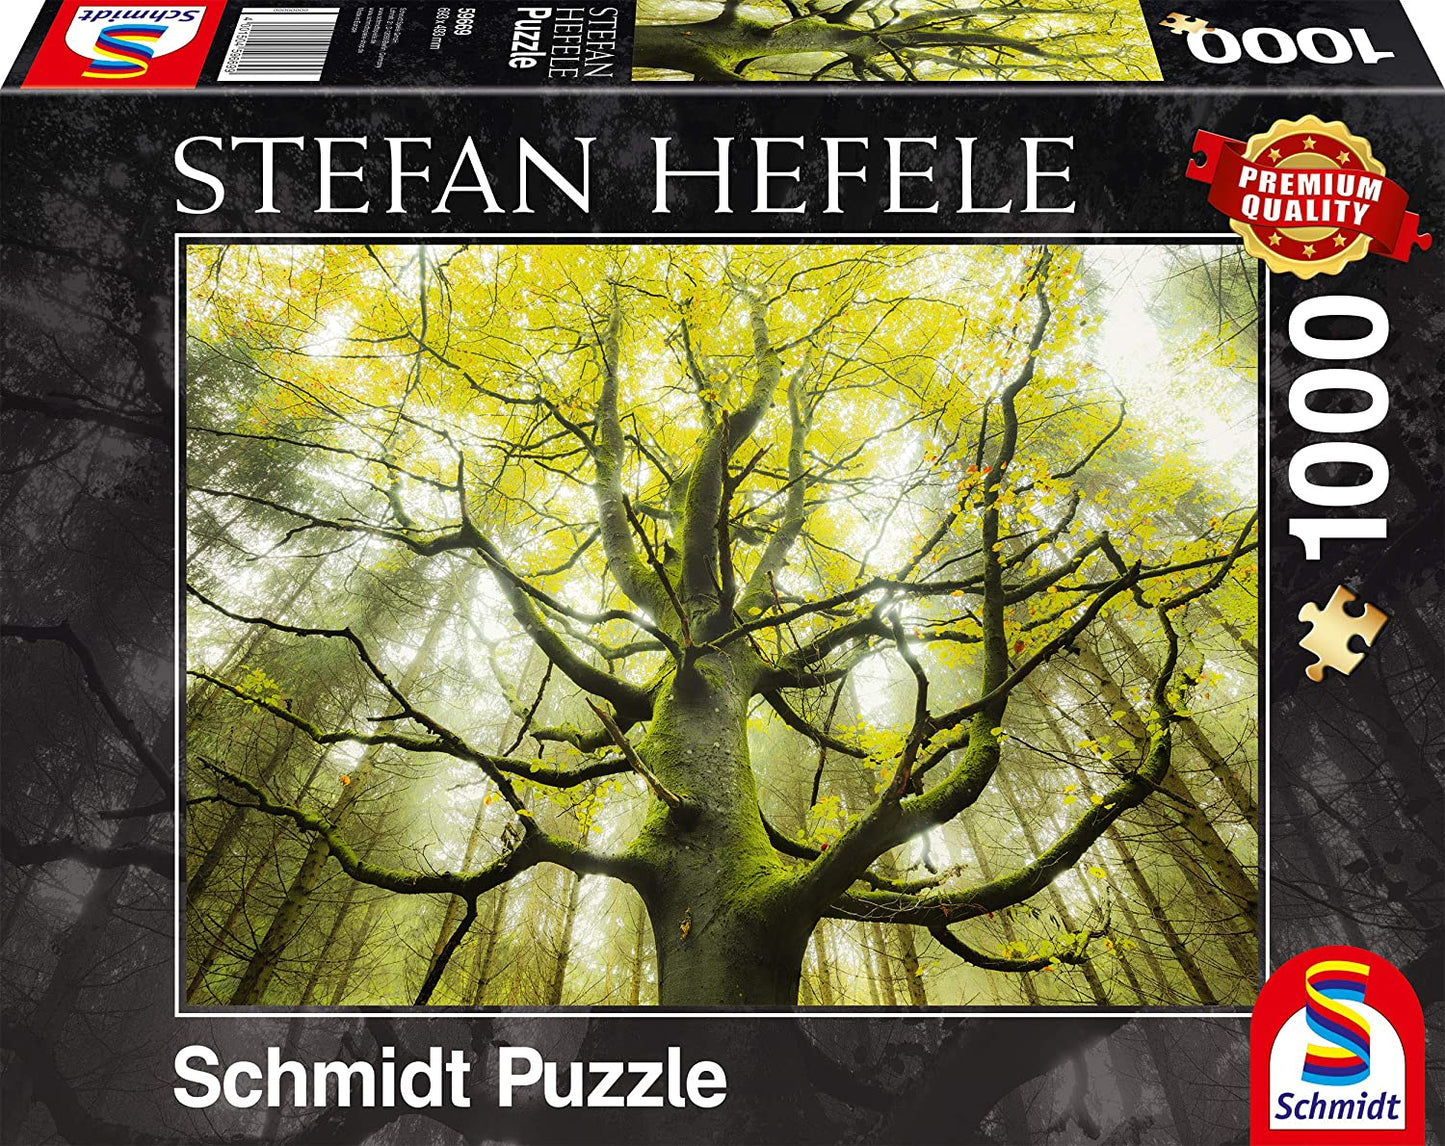 Dream Tree af Stefaan Hefele, 1000 brikker puslespil